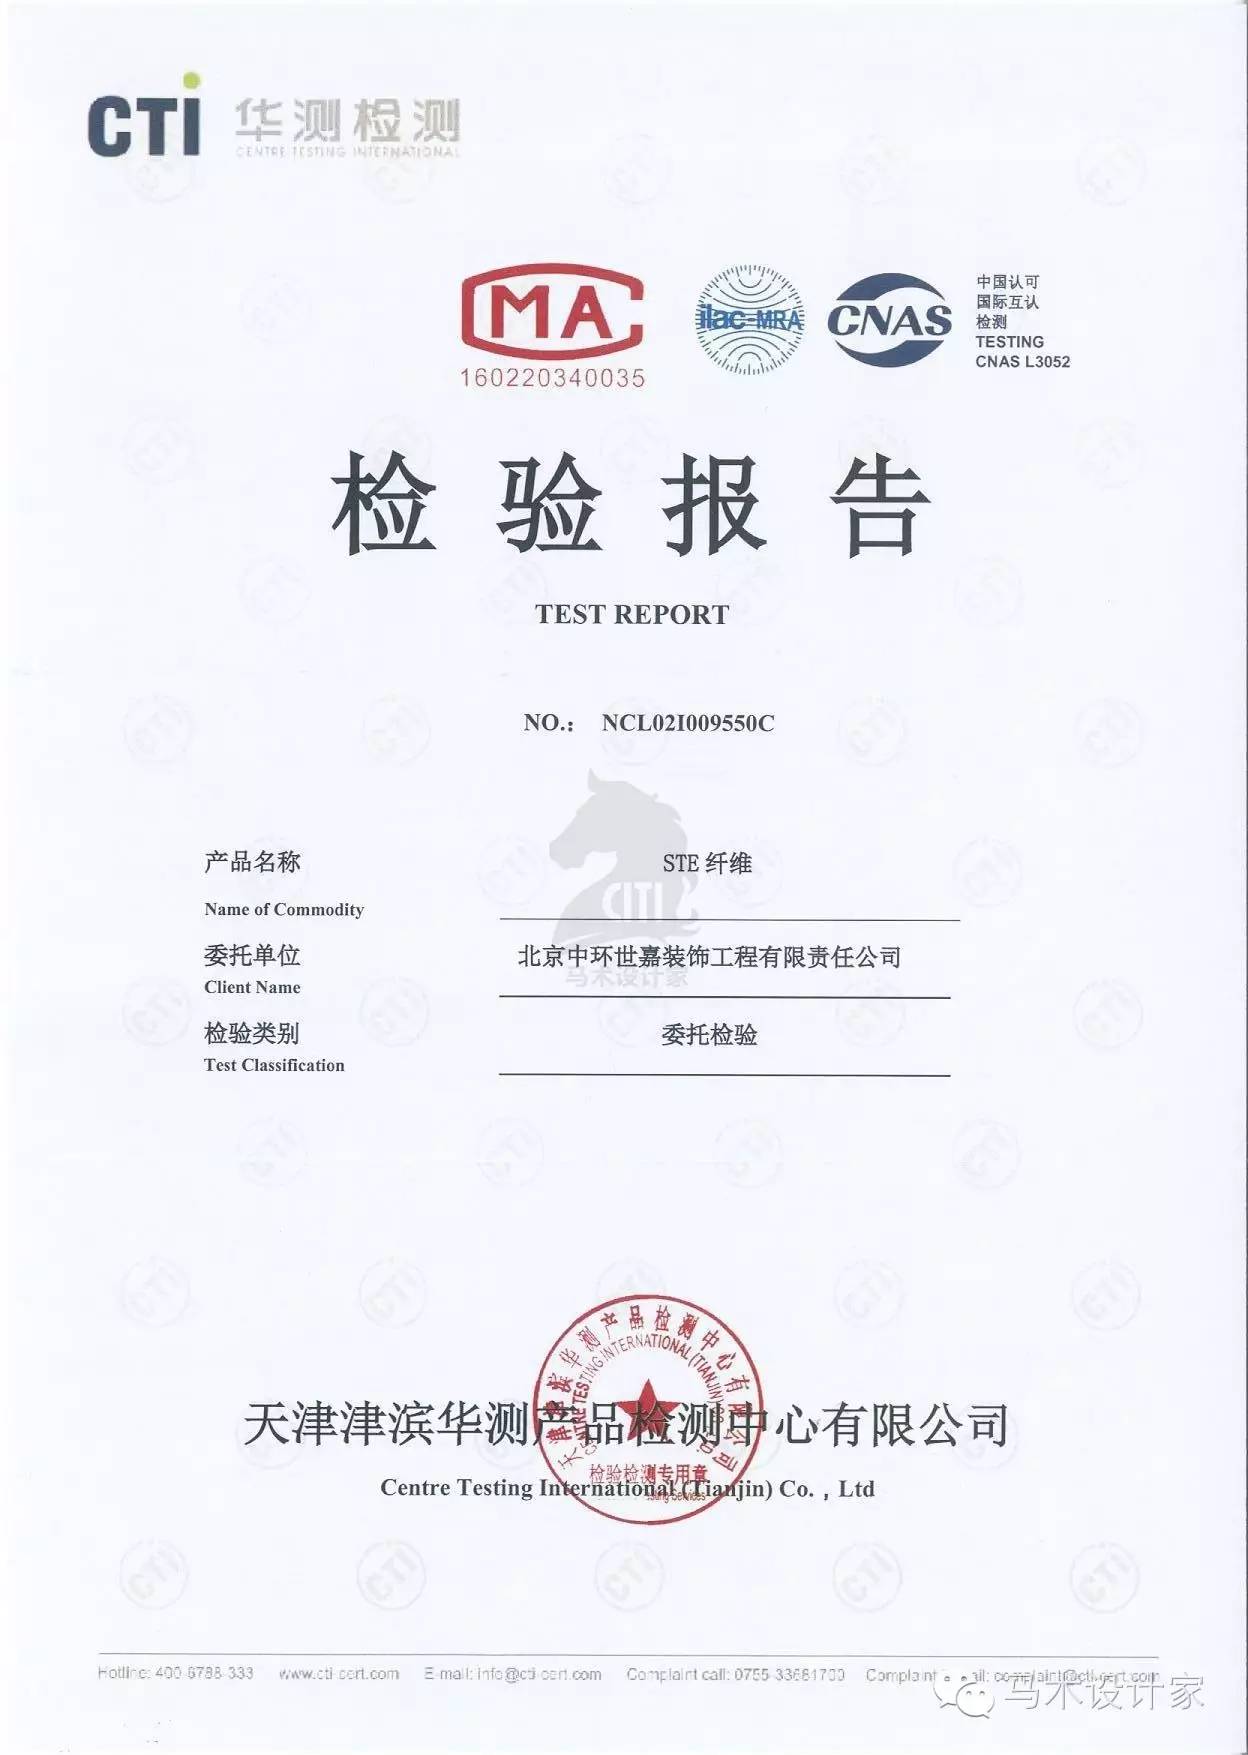 cma认证,盖有cma章的检验报告用于产品质量评价,具有法律效力